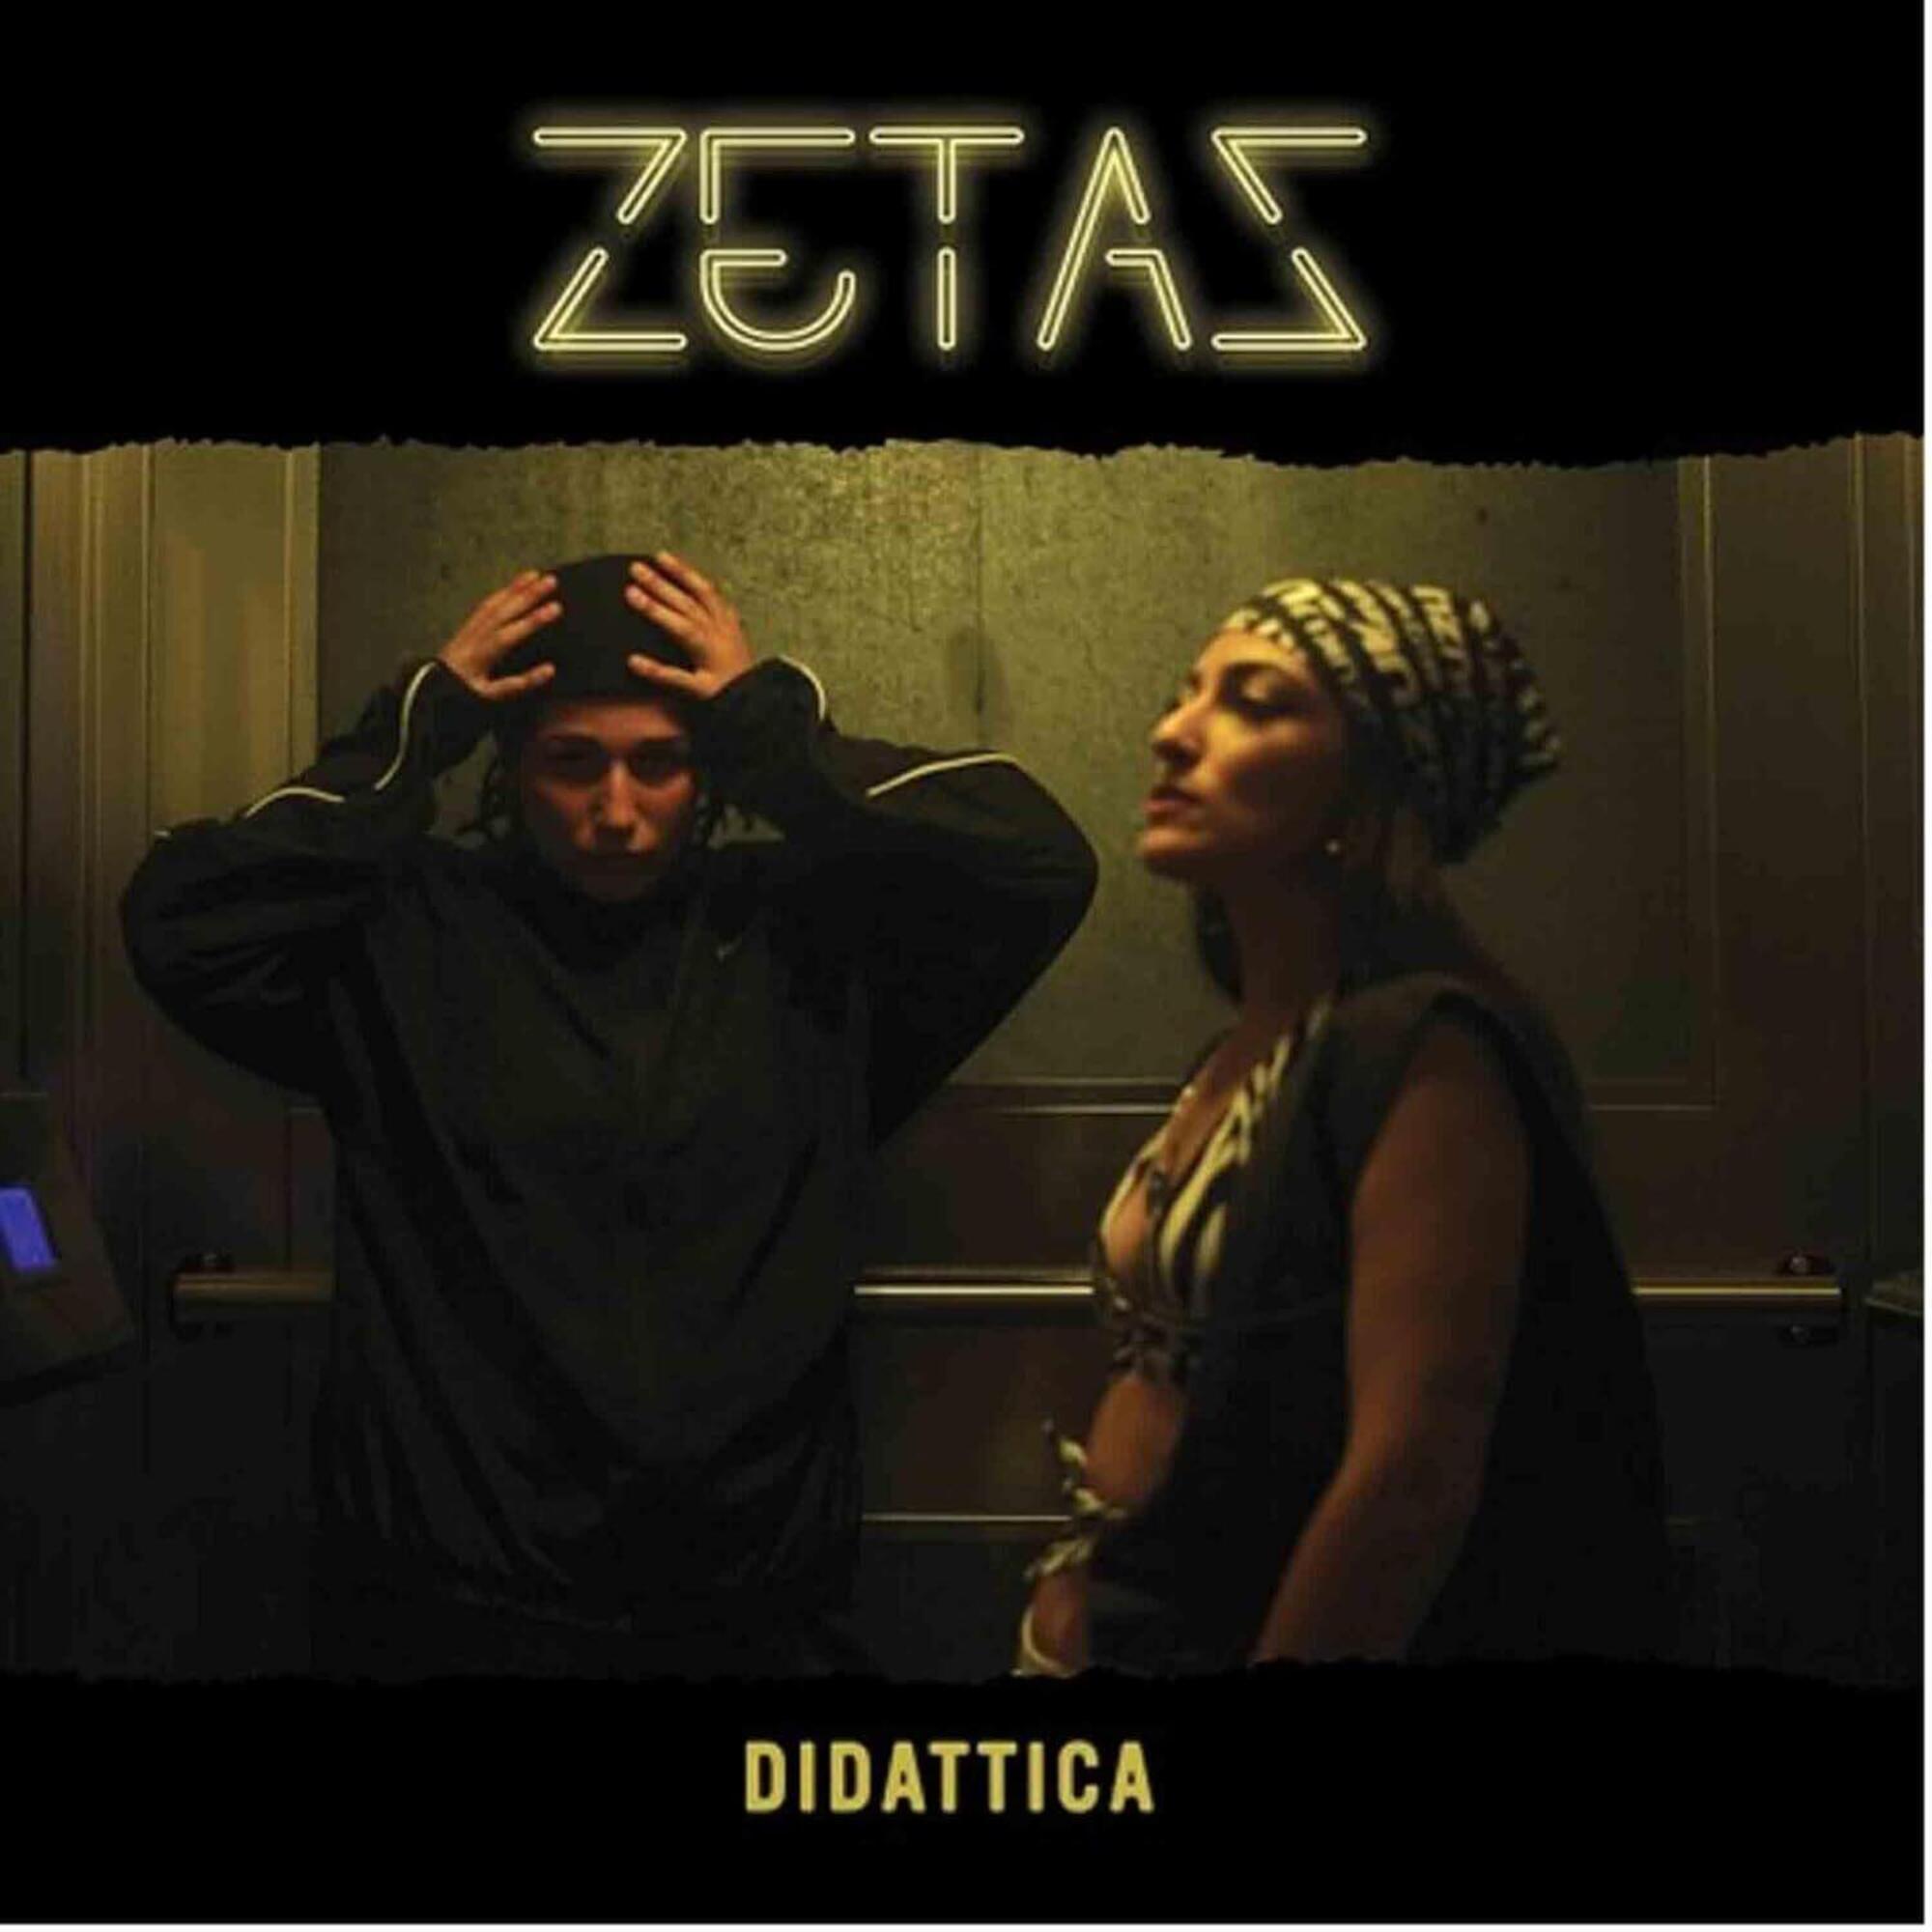 Le Zetas